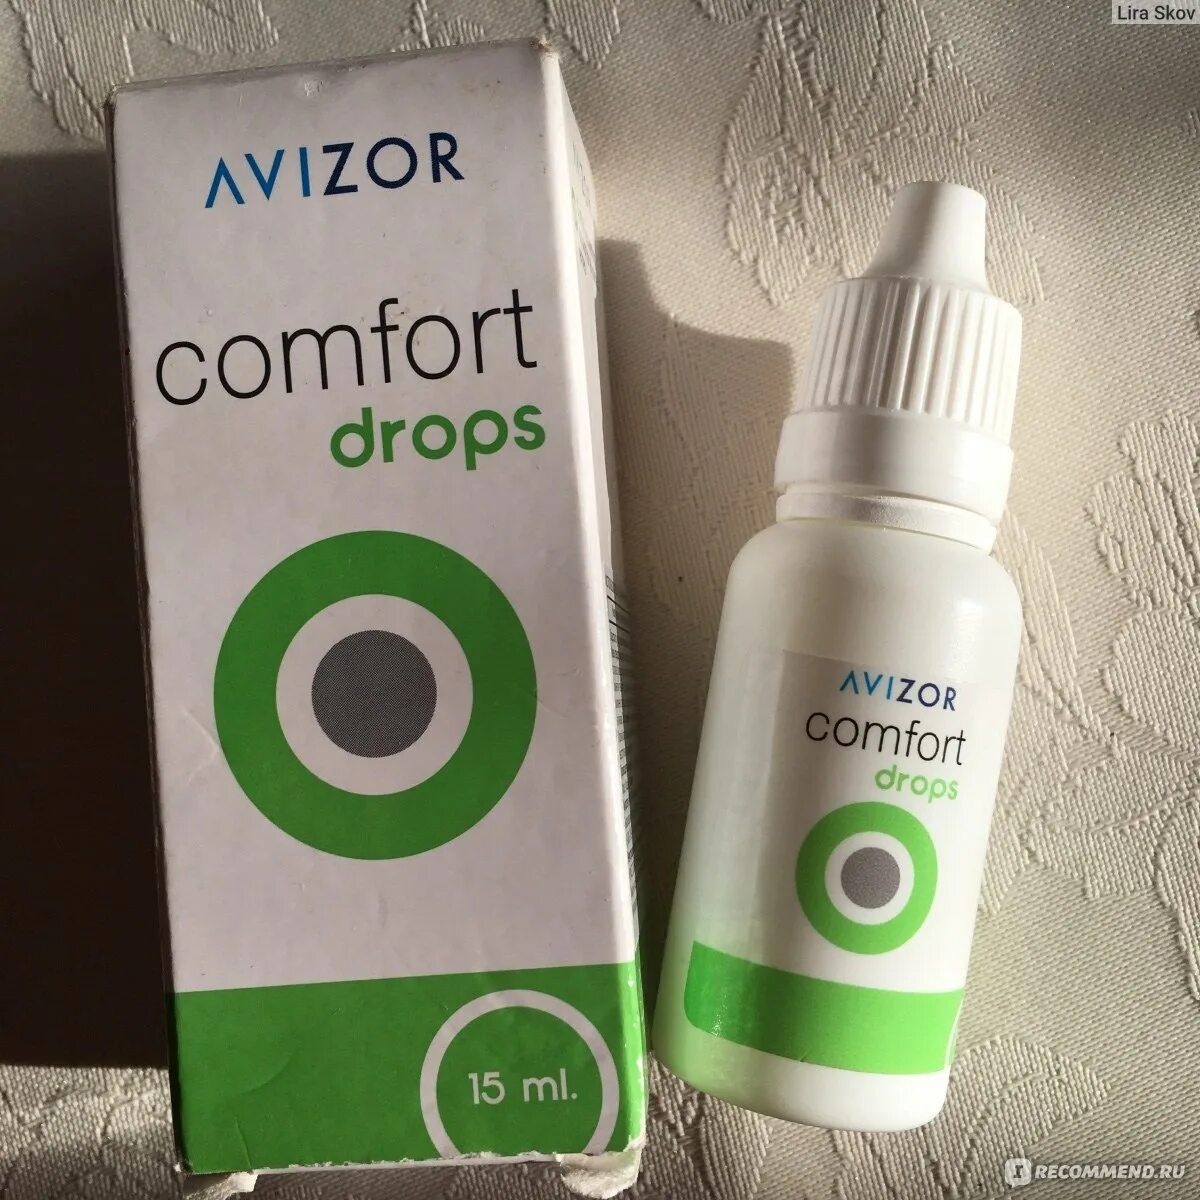 Avizor Comfort Drops 15ml. Avizor Comfort Drops 15 мл. Увлажняющие капли «Comfort Drops» Avizor (15 мл). Увлажняющие капли для глаз Avizor Comfort Drops.